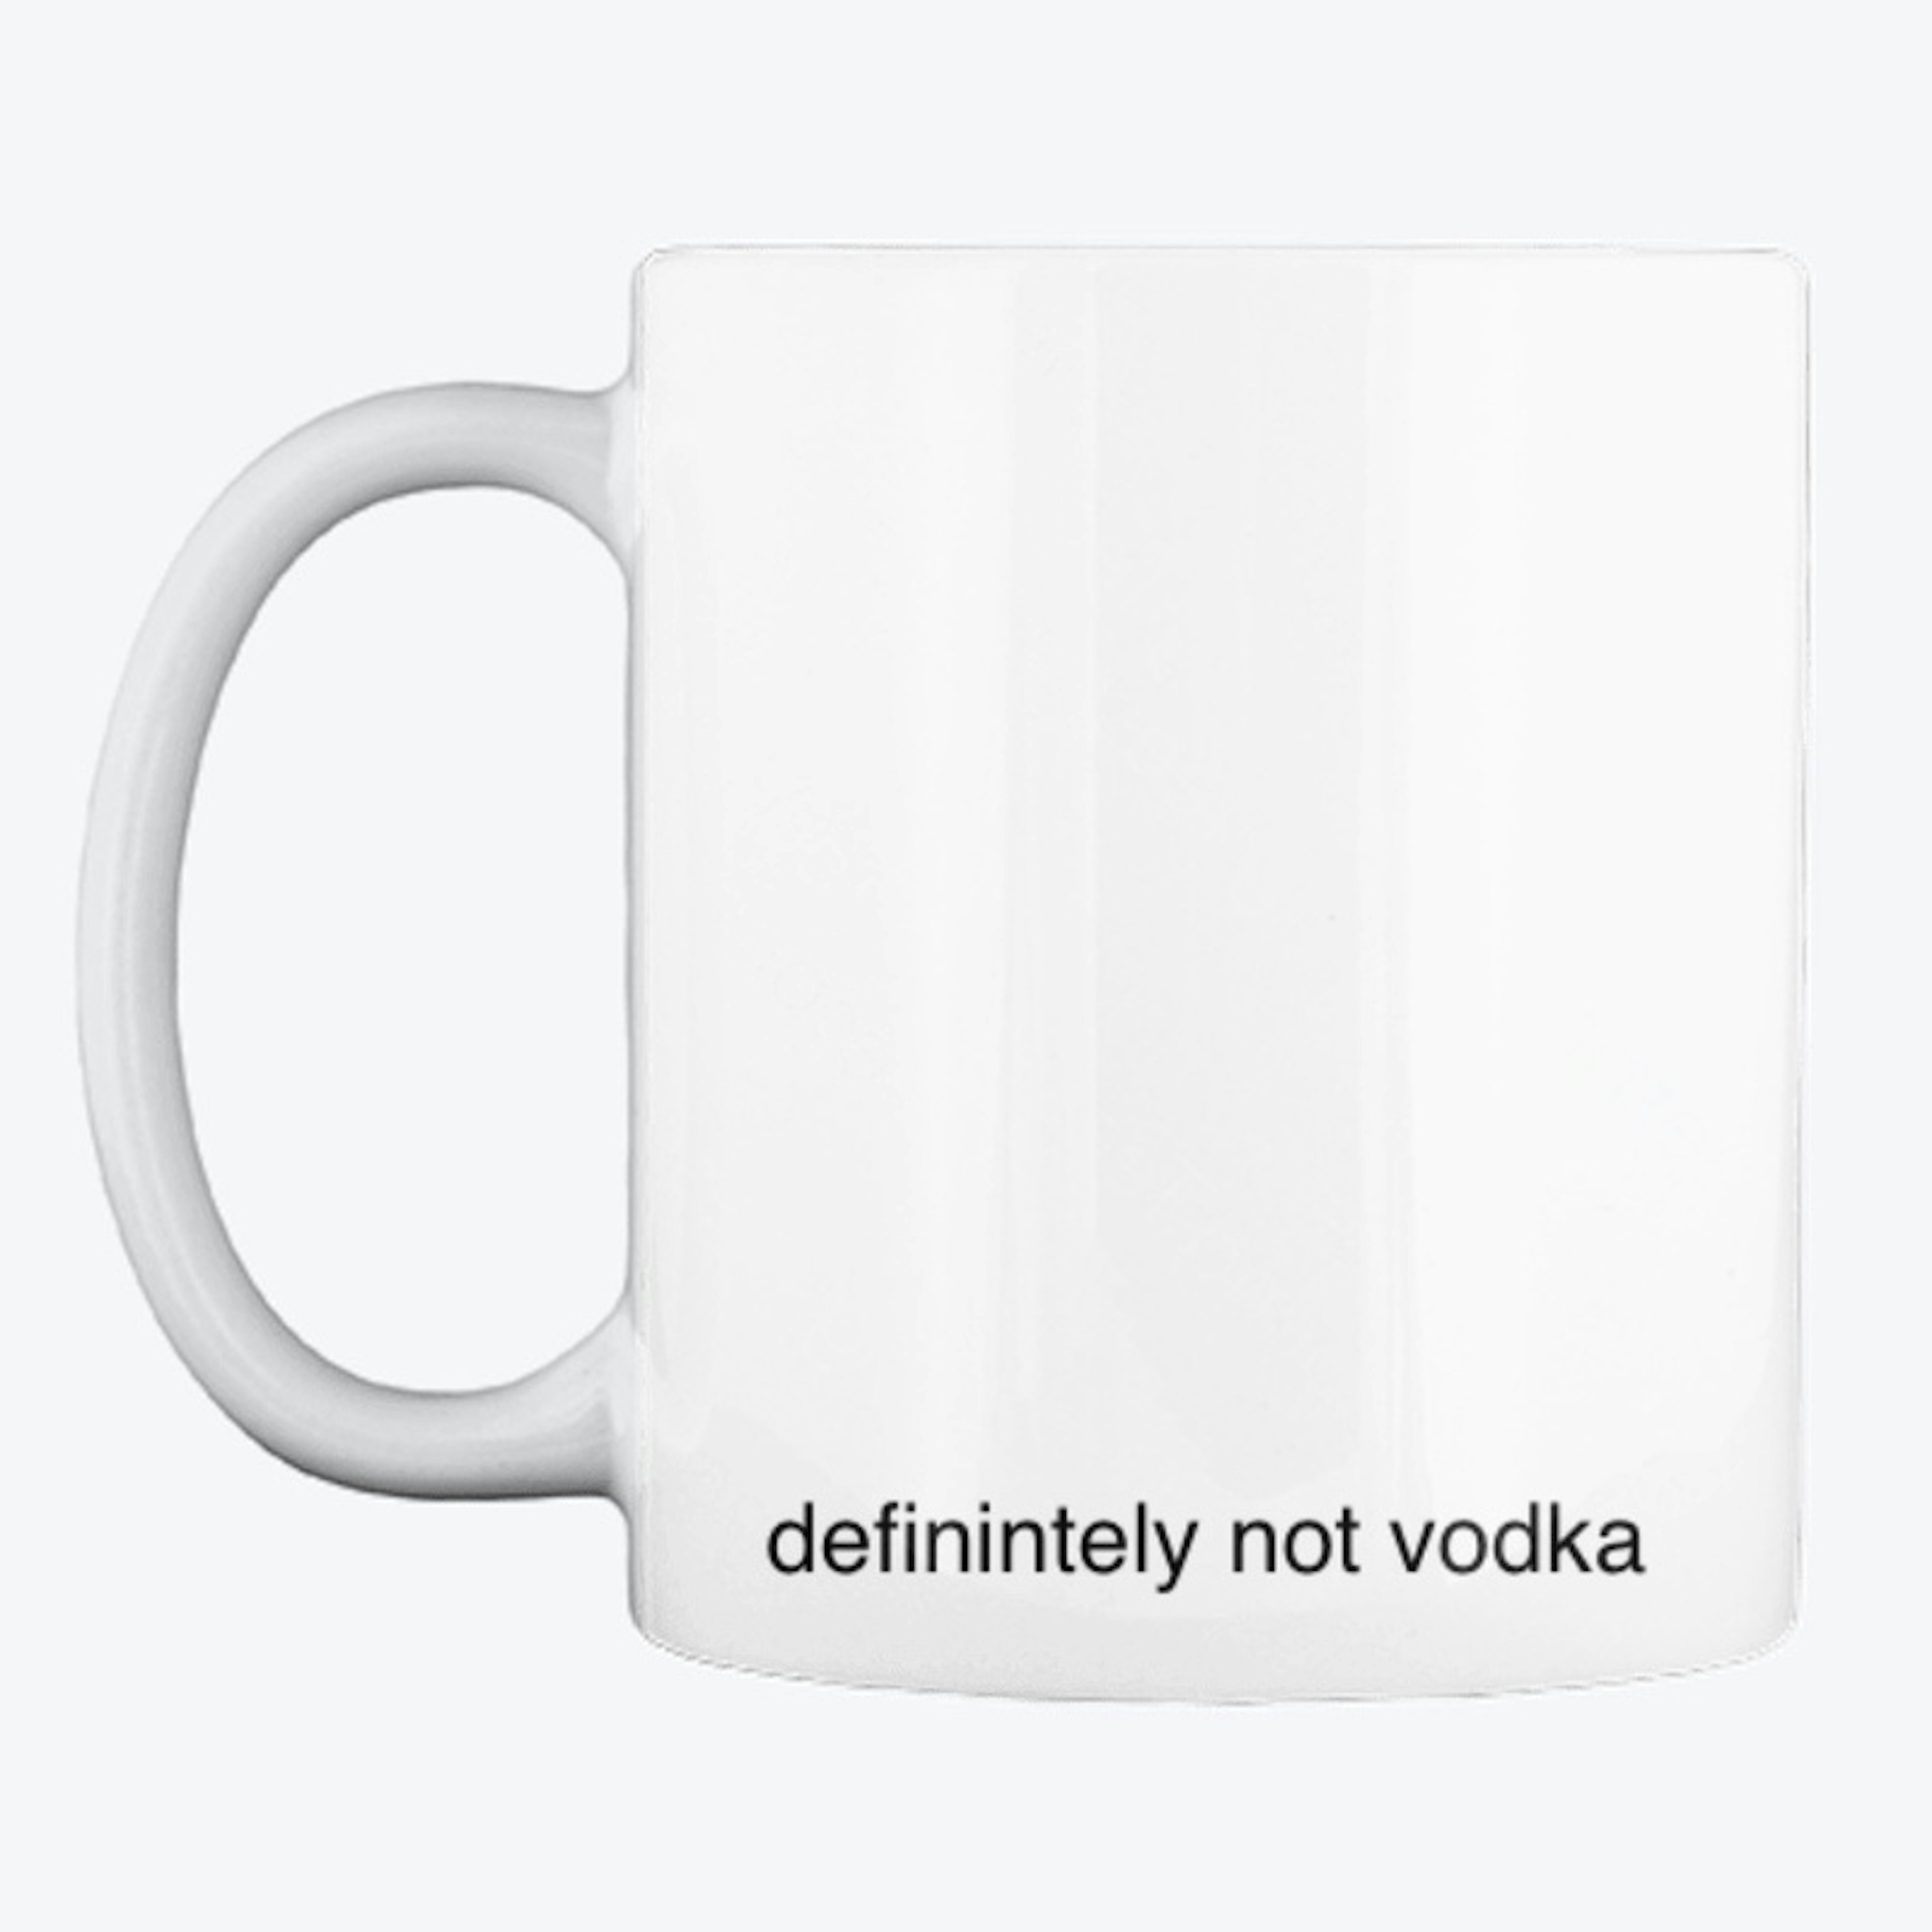 definitely not vodka